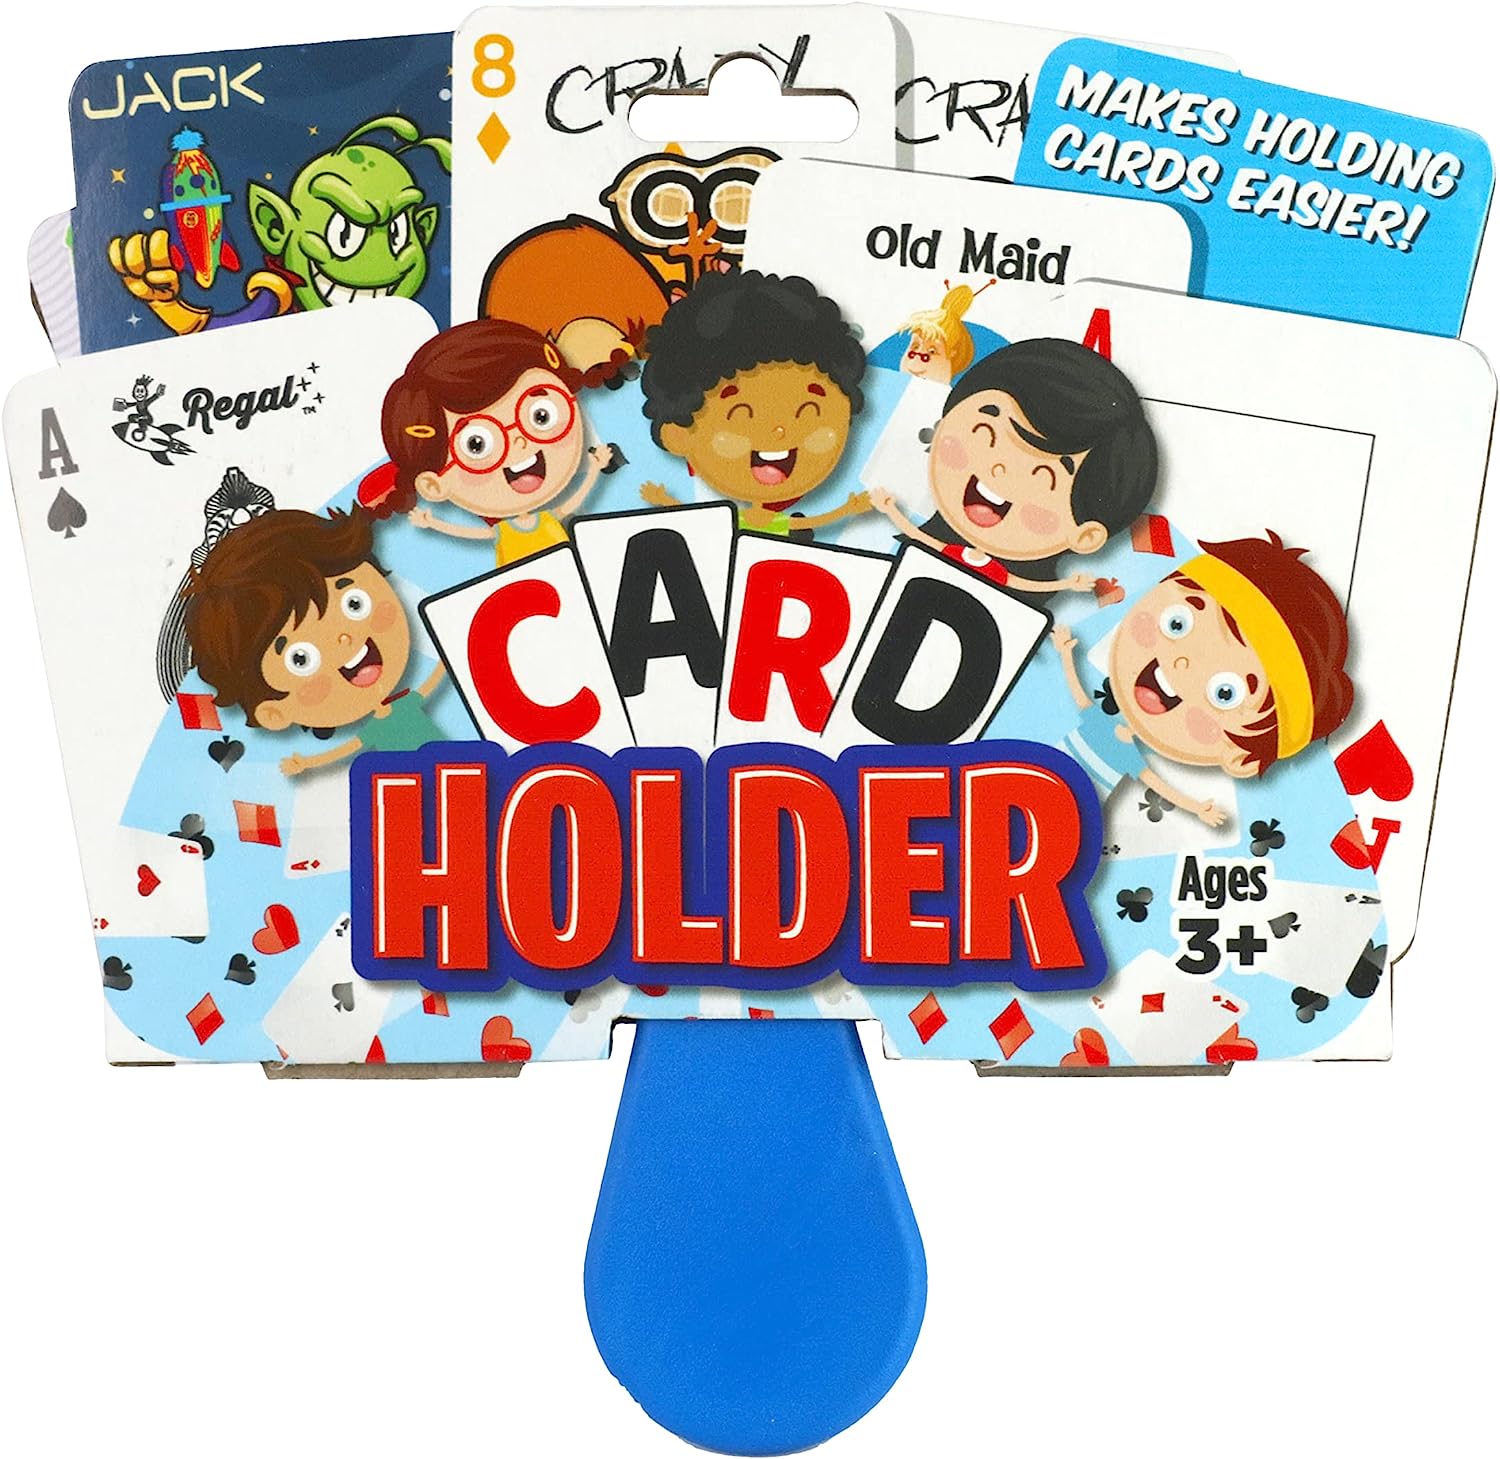 Kids Card Holder